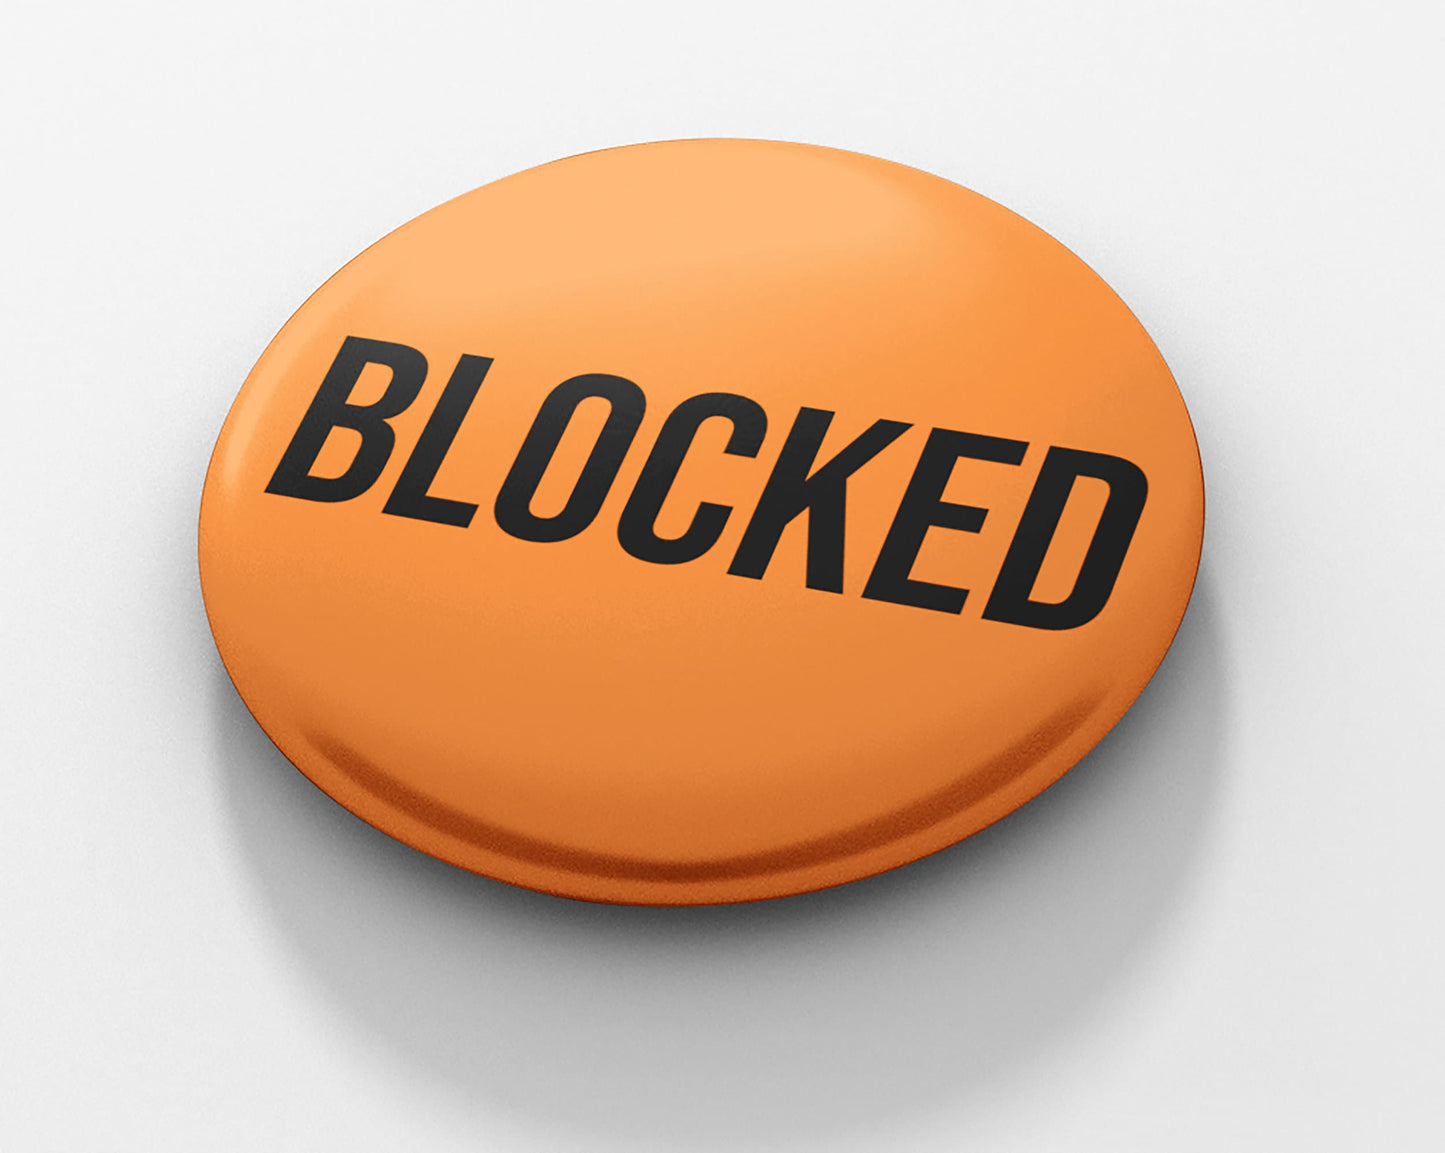 Blocked Pinback Button